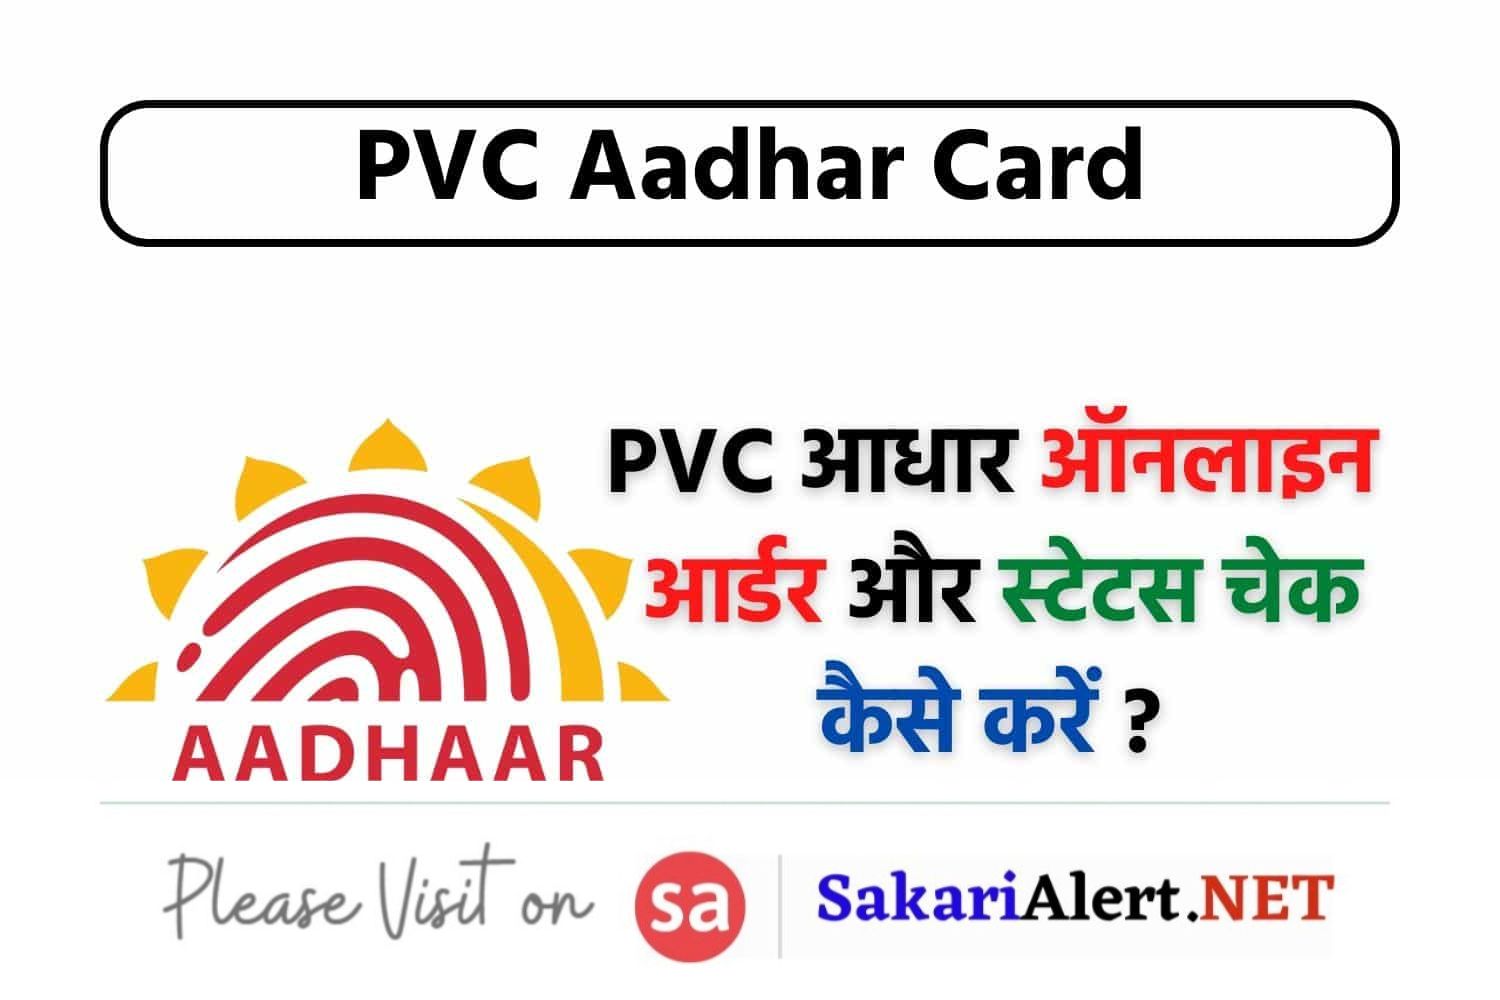 PVC Aadhar Card: पीवीसी आधार कार्ड आर्डर करने और स्टेटस चेक करने की प्रक्रिया जानें